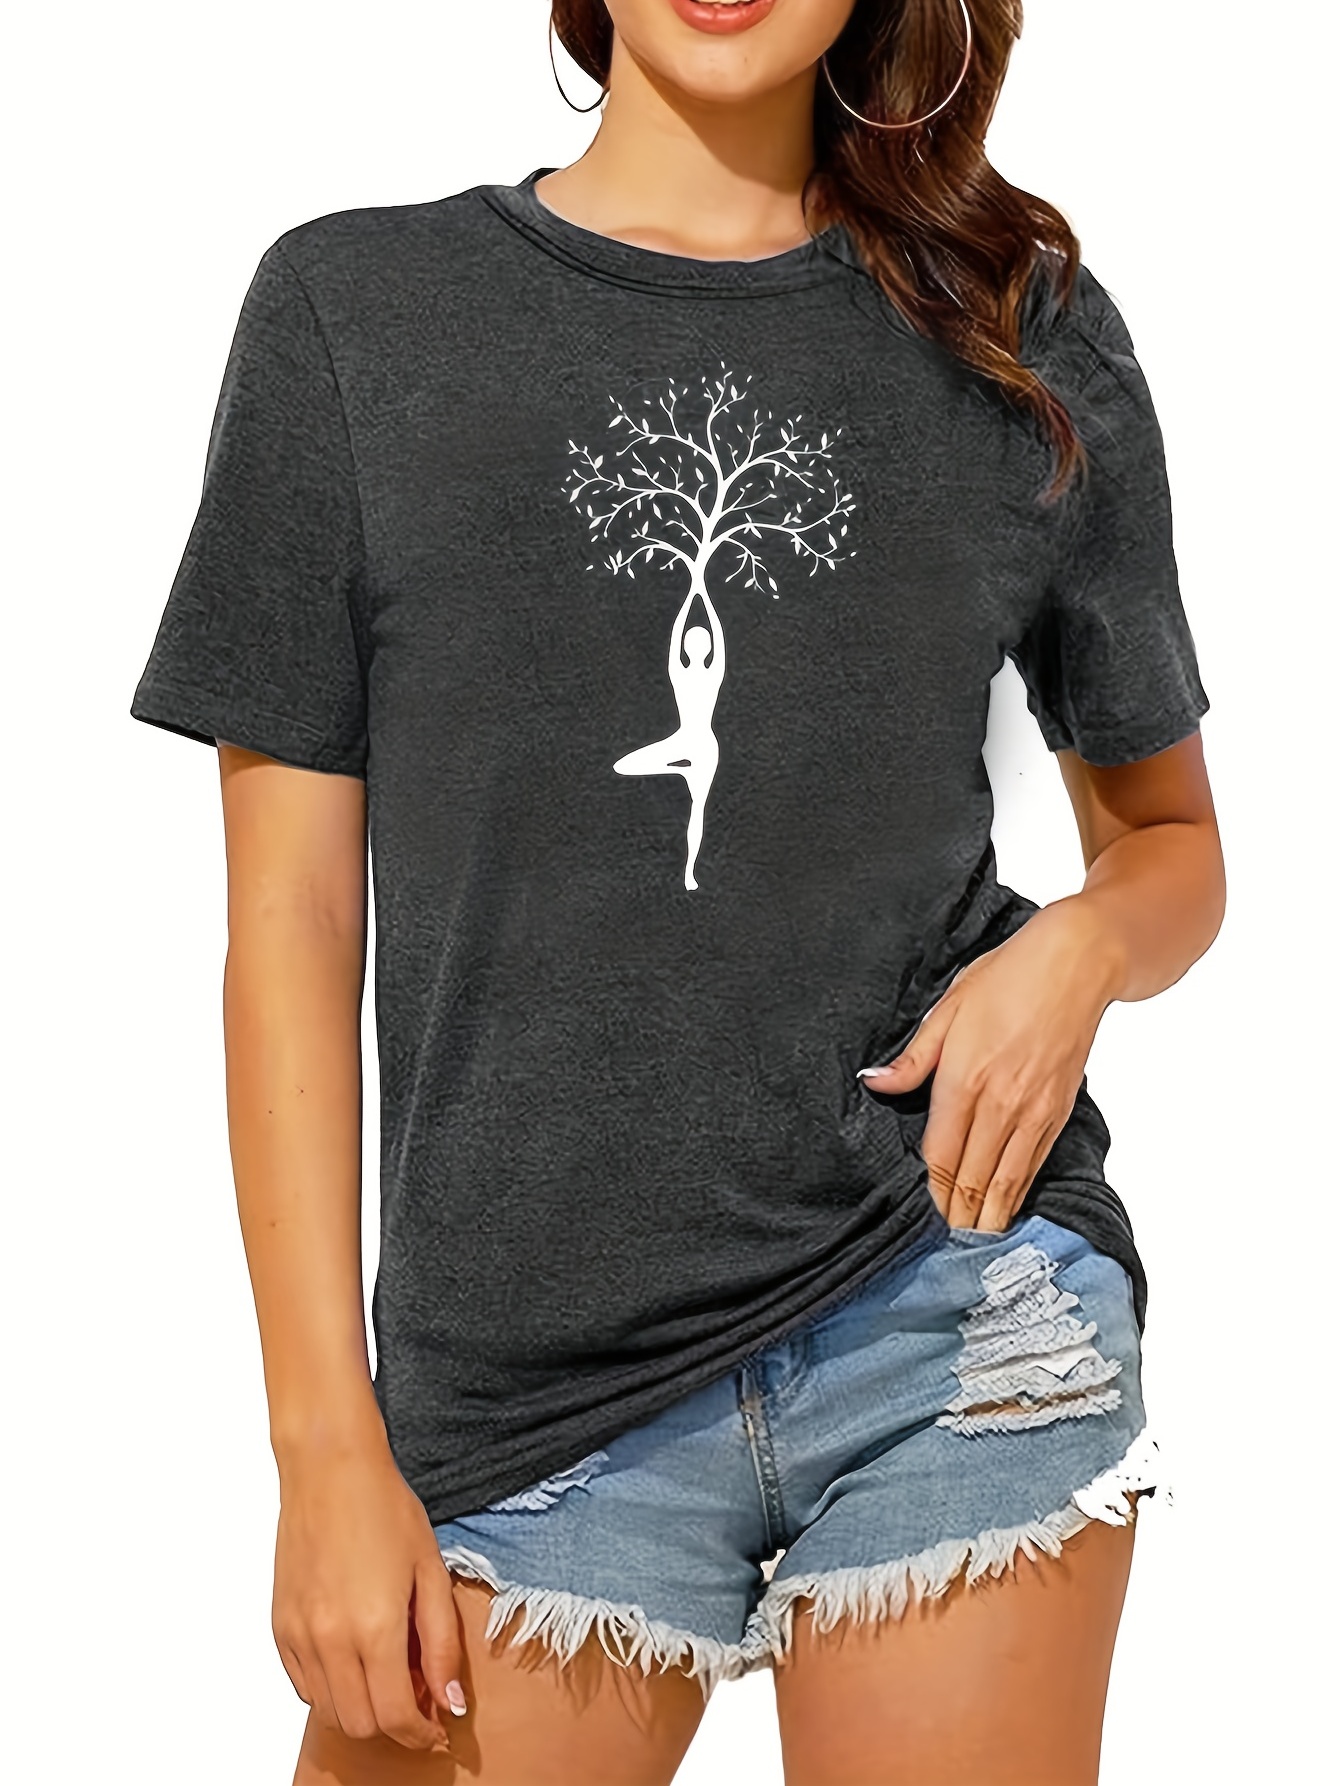 Newest Yoga Tree Print Tshirt Girls Summer Fashion Short Sleeve T